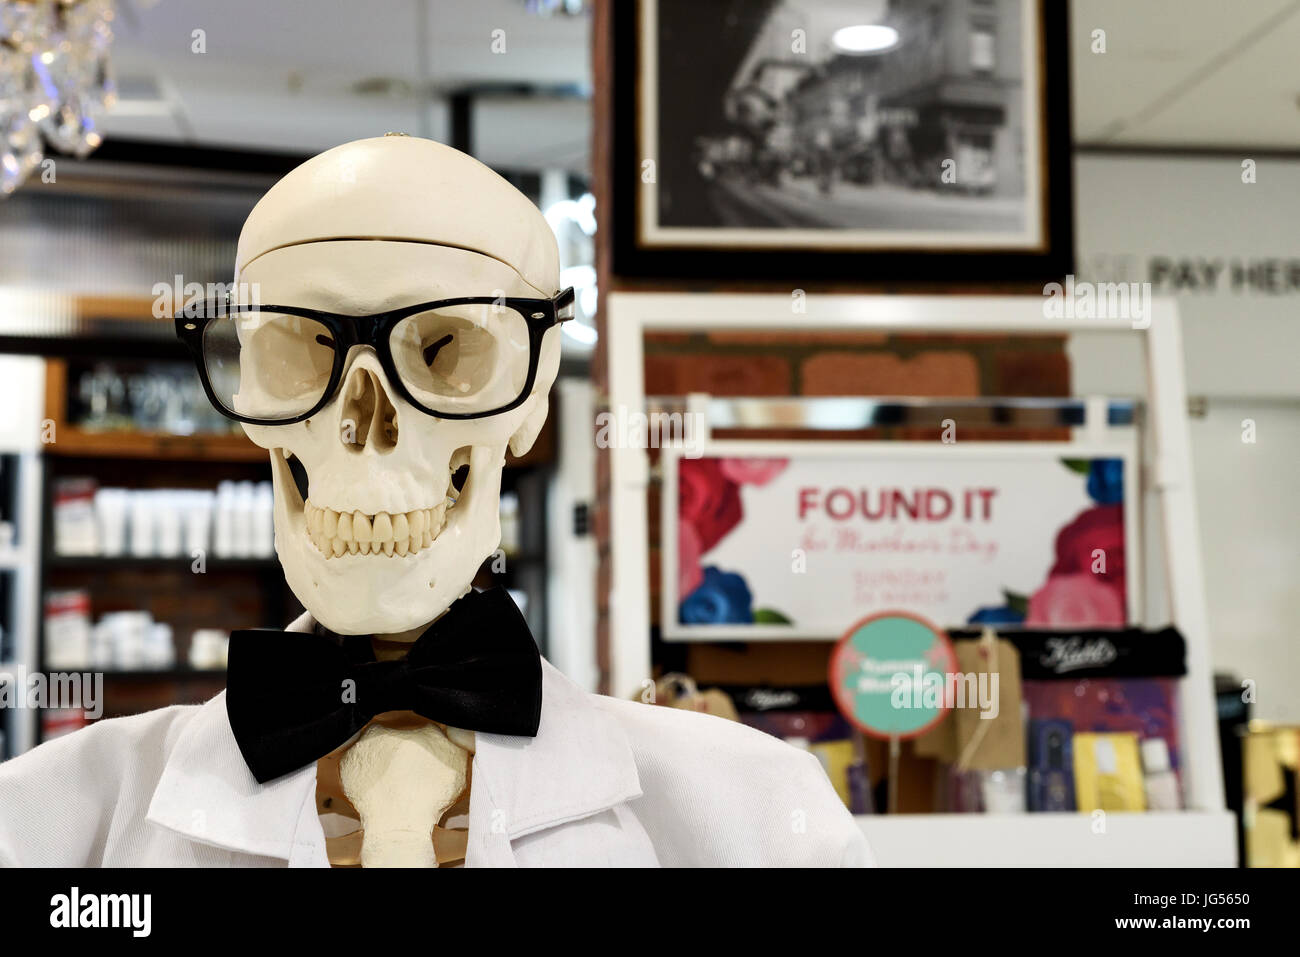 Squelette humain portant des lunettes et noeud papillon dans une vitrine Banque D'Images